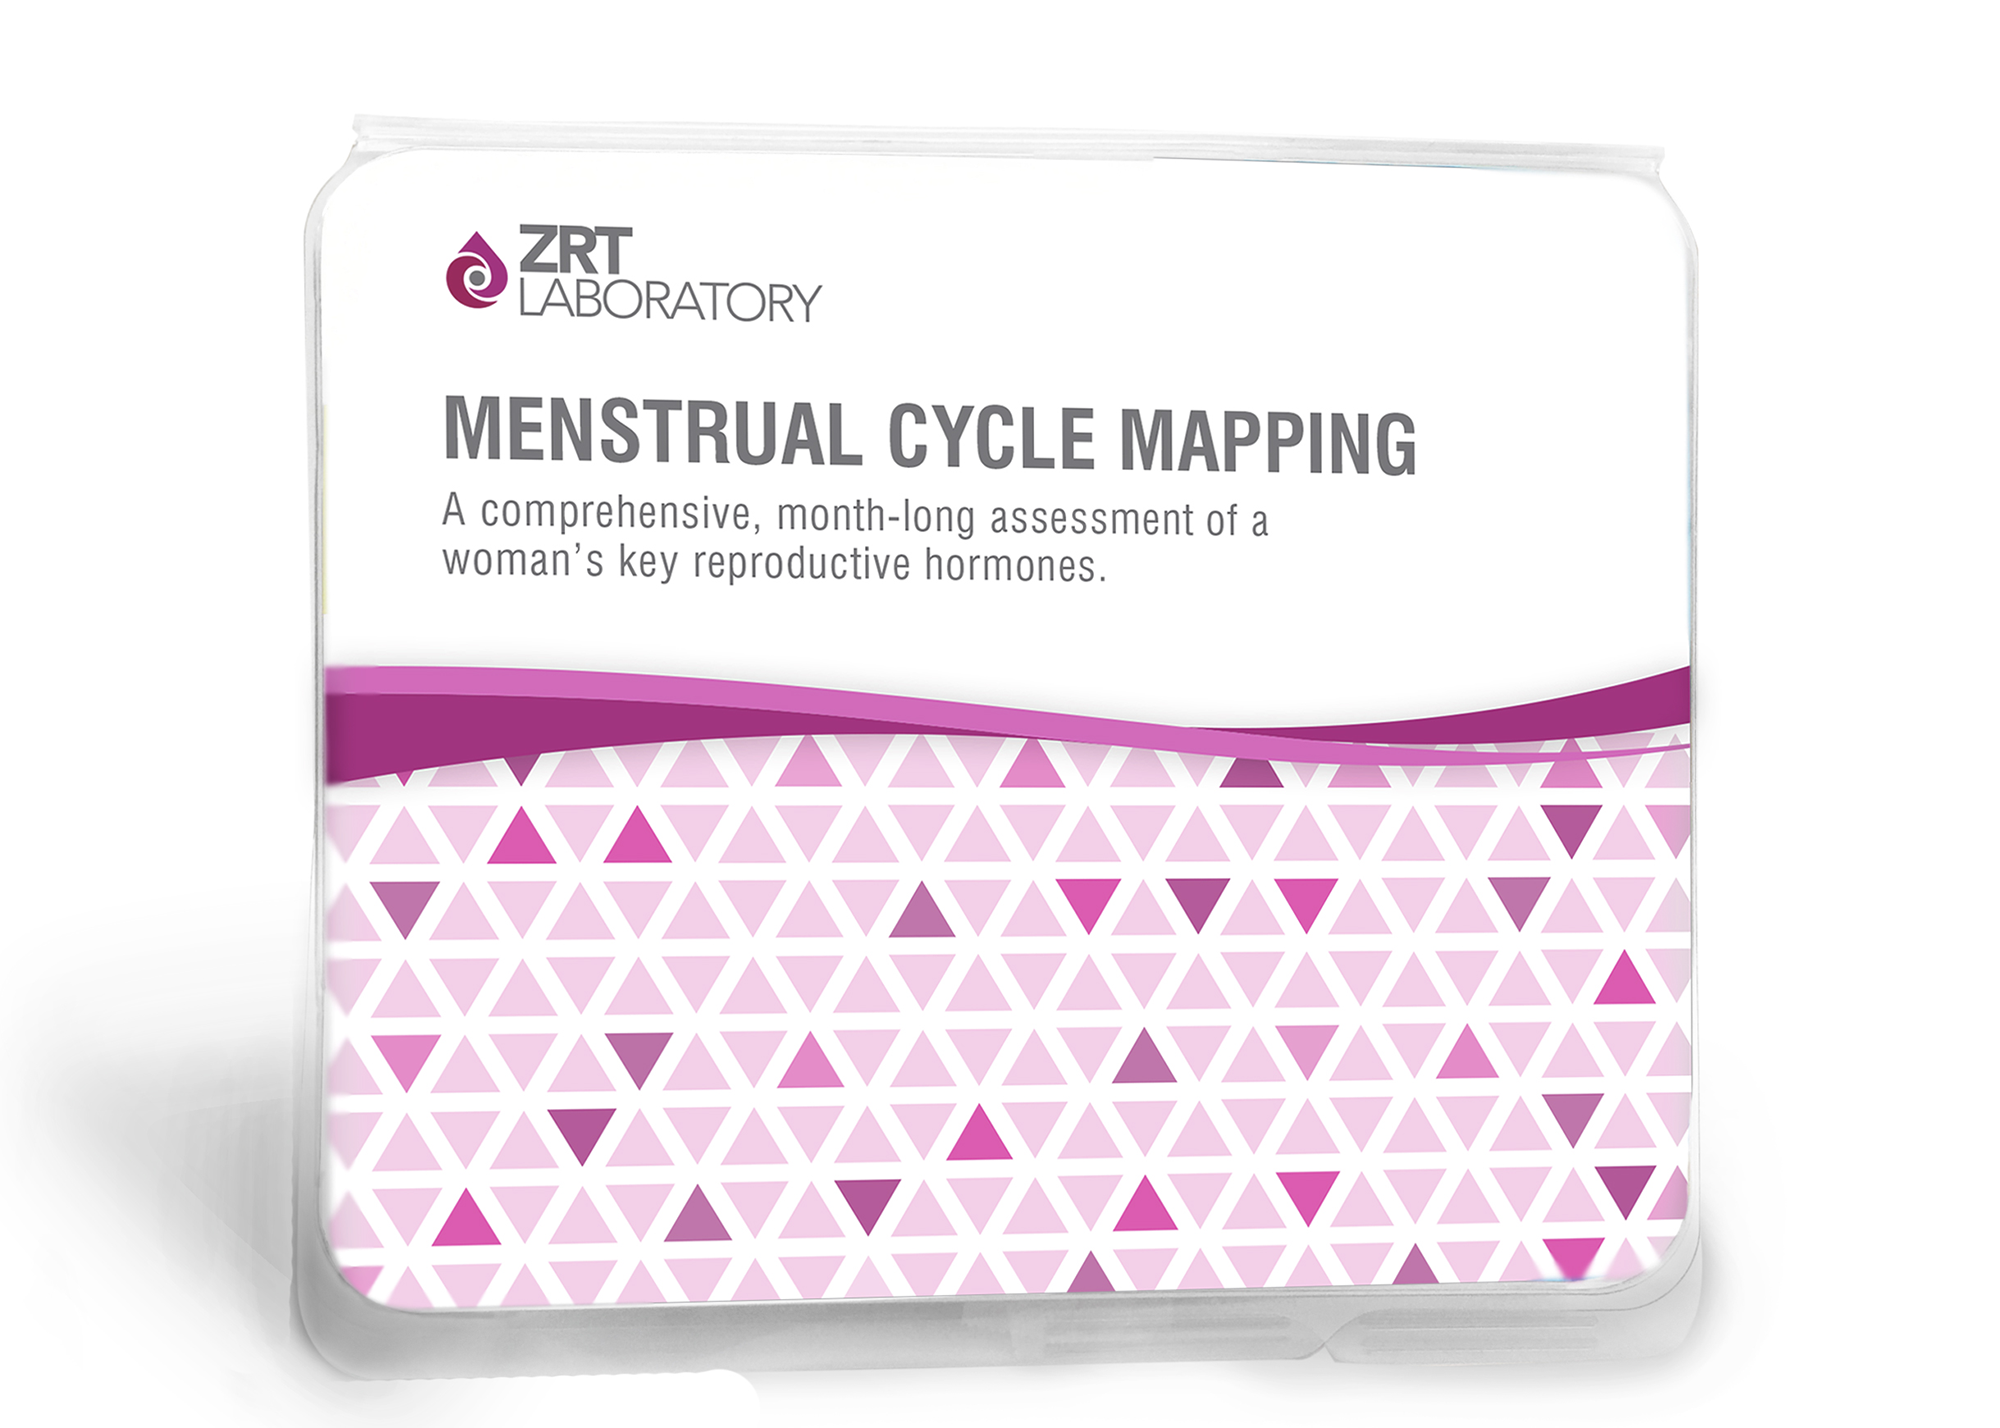 ZRT Laboratory Menstrual Cycle Mapping Test Kit